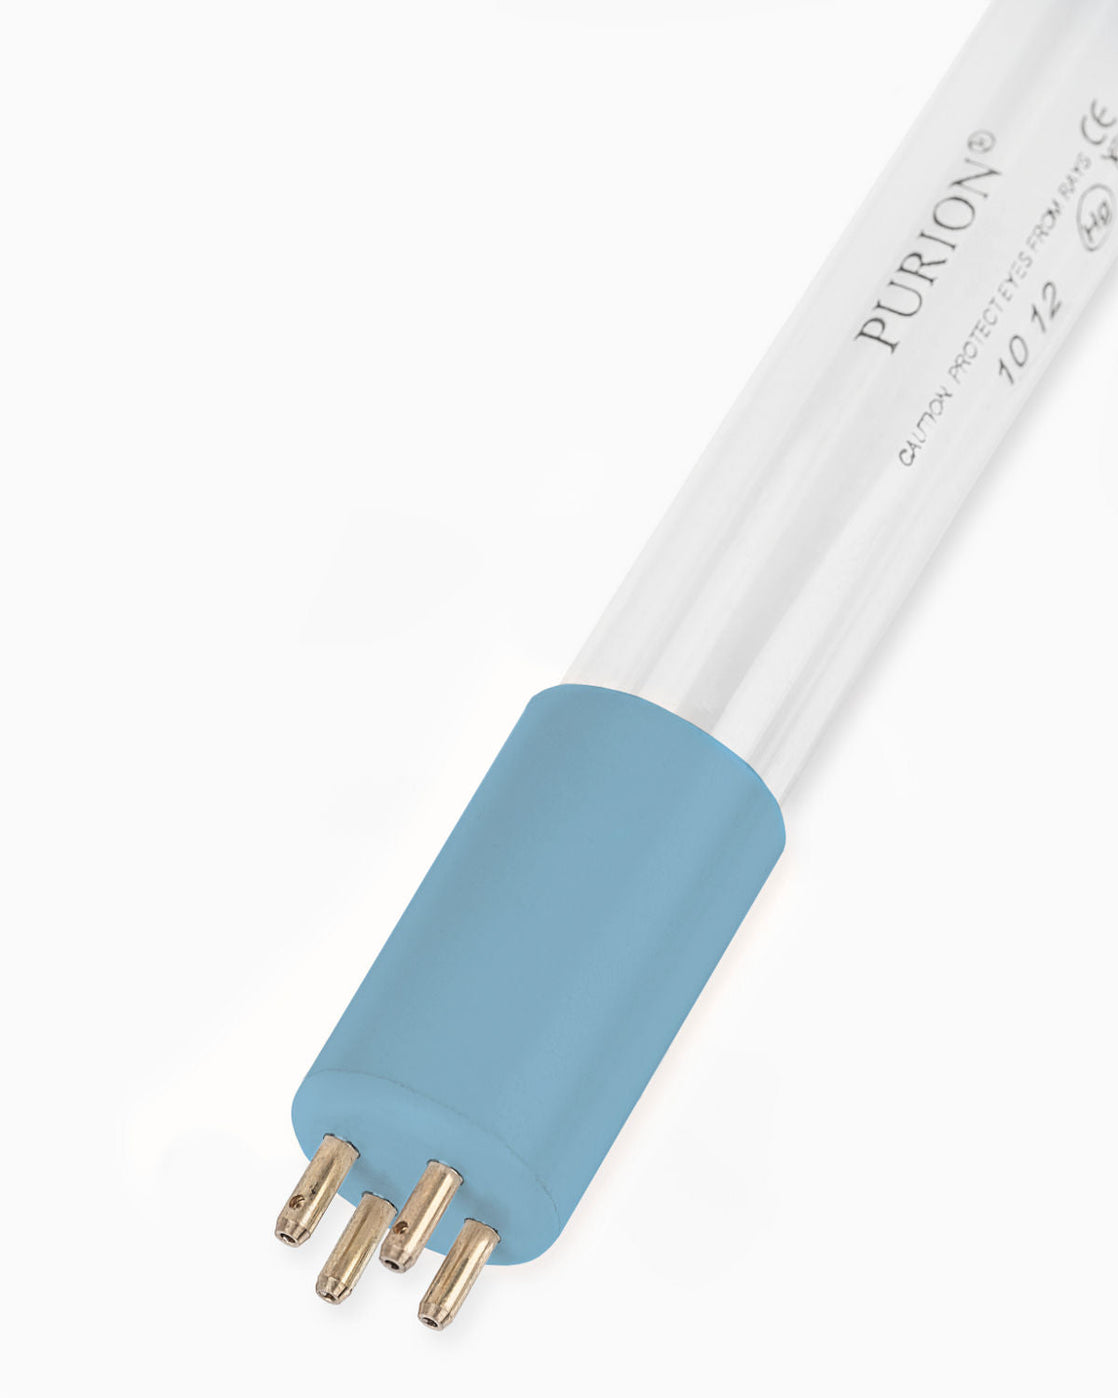 Ein PURION IBC Universal 48W SPL BS mit einer blauen Lichtröhre auf weißem Hintergrund, entworfen, um Verkeimungen zu beseitigen und Wasserentnahme zu ermöglichen, hergestellt von UV Concept GmbH.